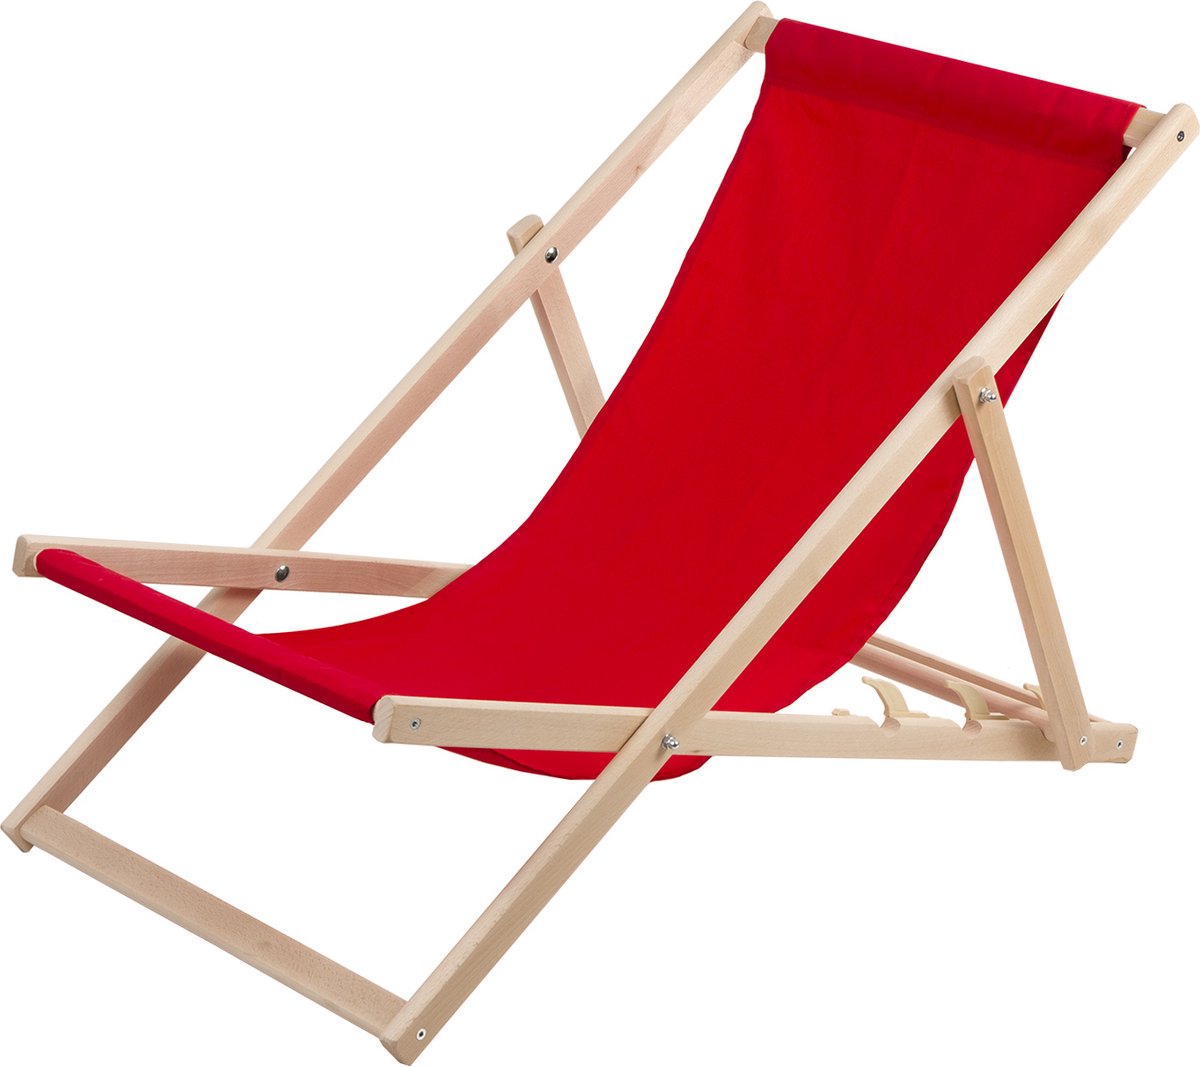 WOODOK - Ligstoel - Comfortabele houten ligstoel in rood ideaal voor het strand, balkon, terras